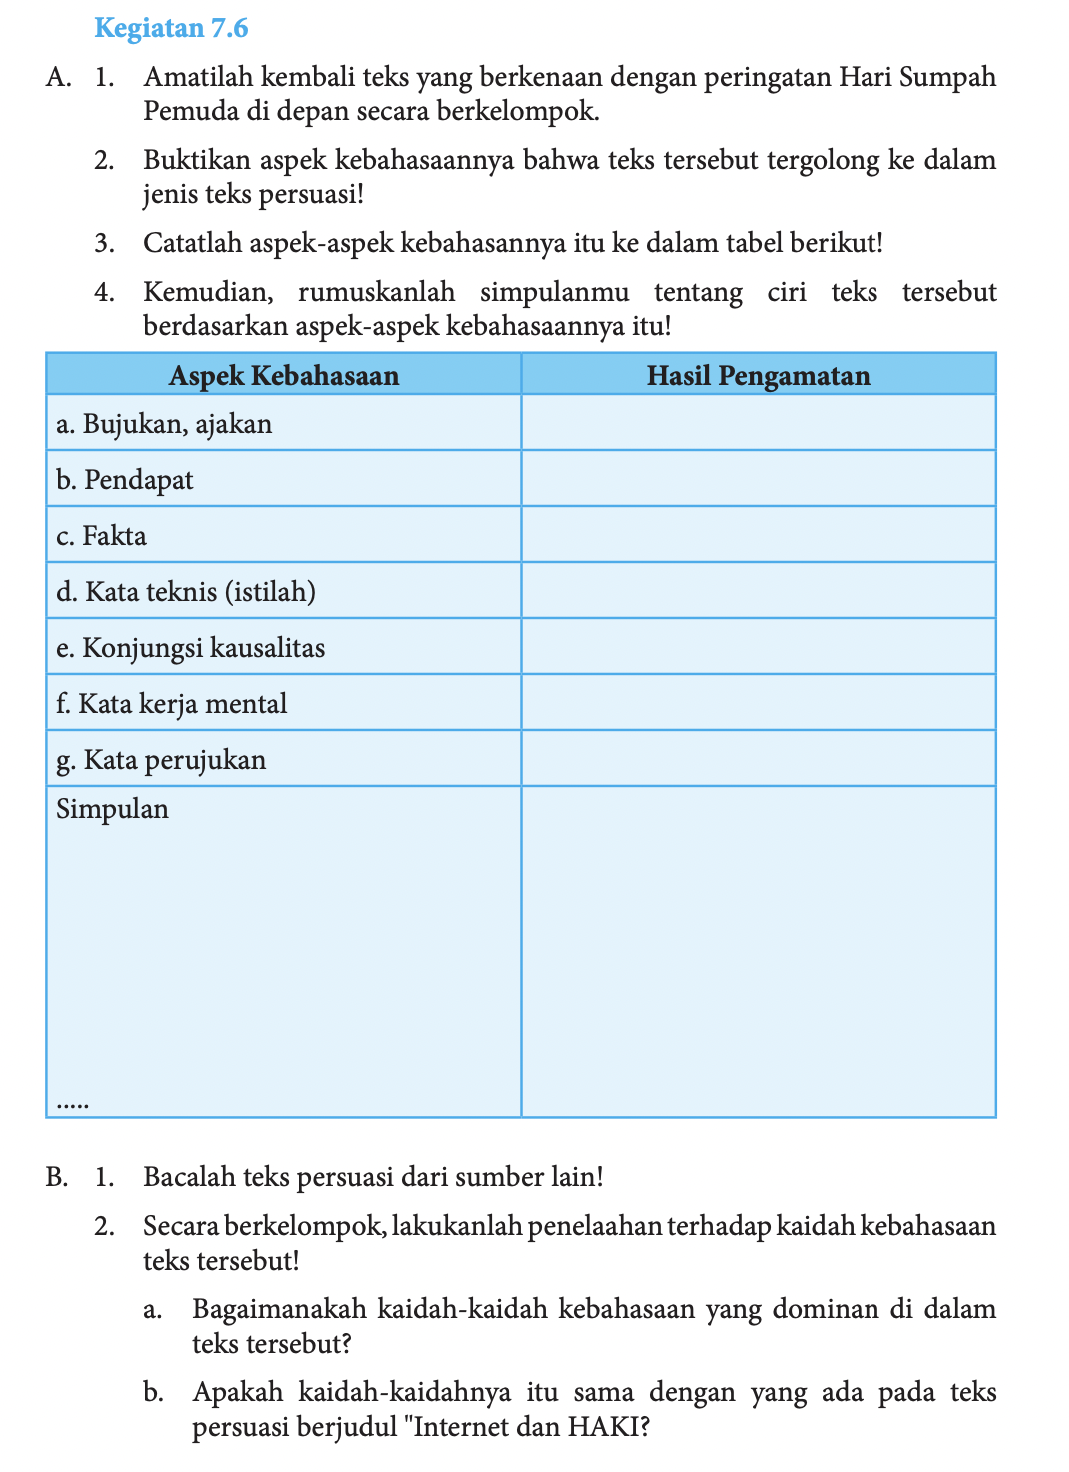 Kunci Jawaban Bahasa Indonesia Kelas 8 Semester 2 Halaman 190, Kegiatan 7.6 Aspek Kebahasaan Teks Persuasi